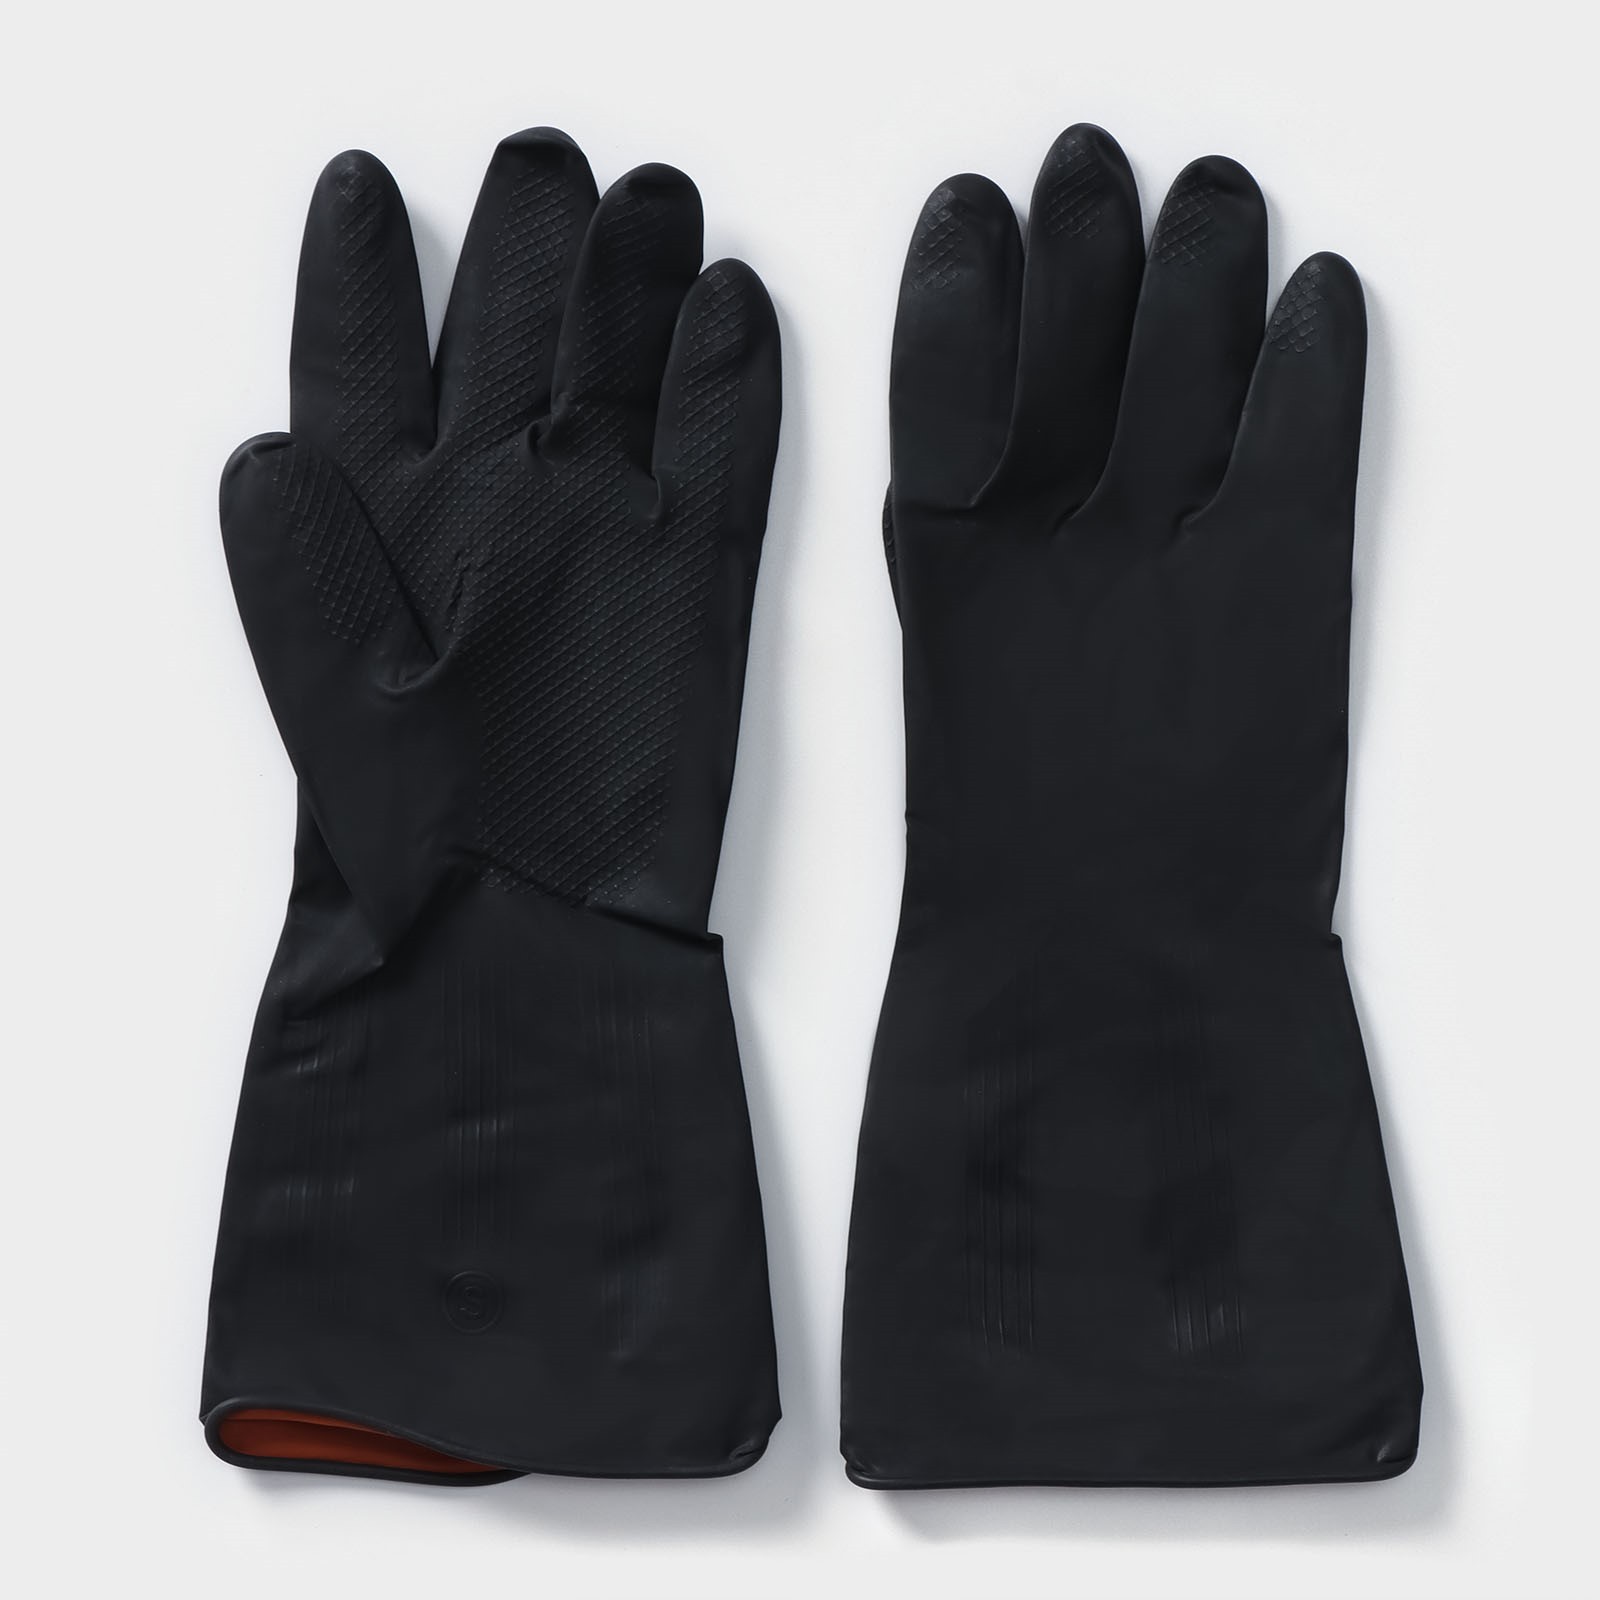 Перчатки хозяйственные Доляна ра-р L, латексные, защитные, химически стойкие, 60 гр, цвет чёрный.